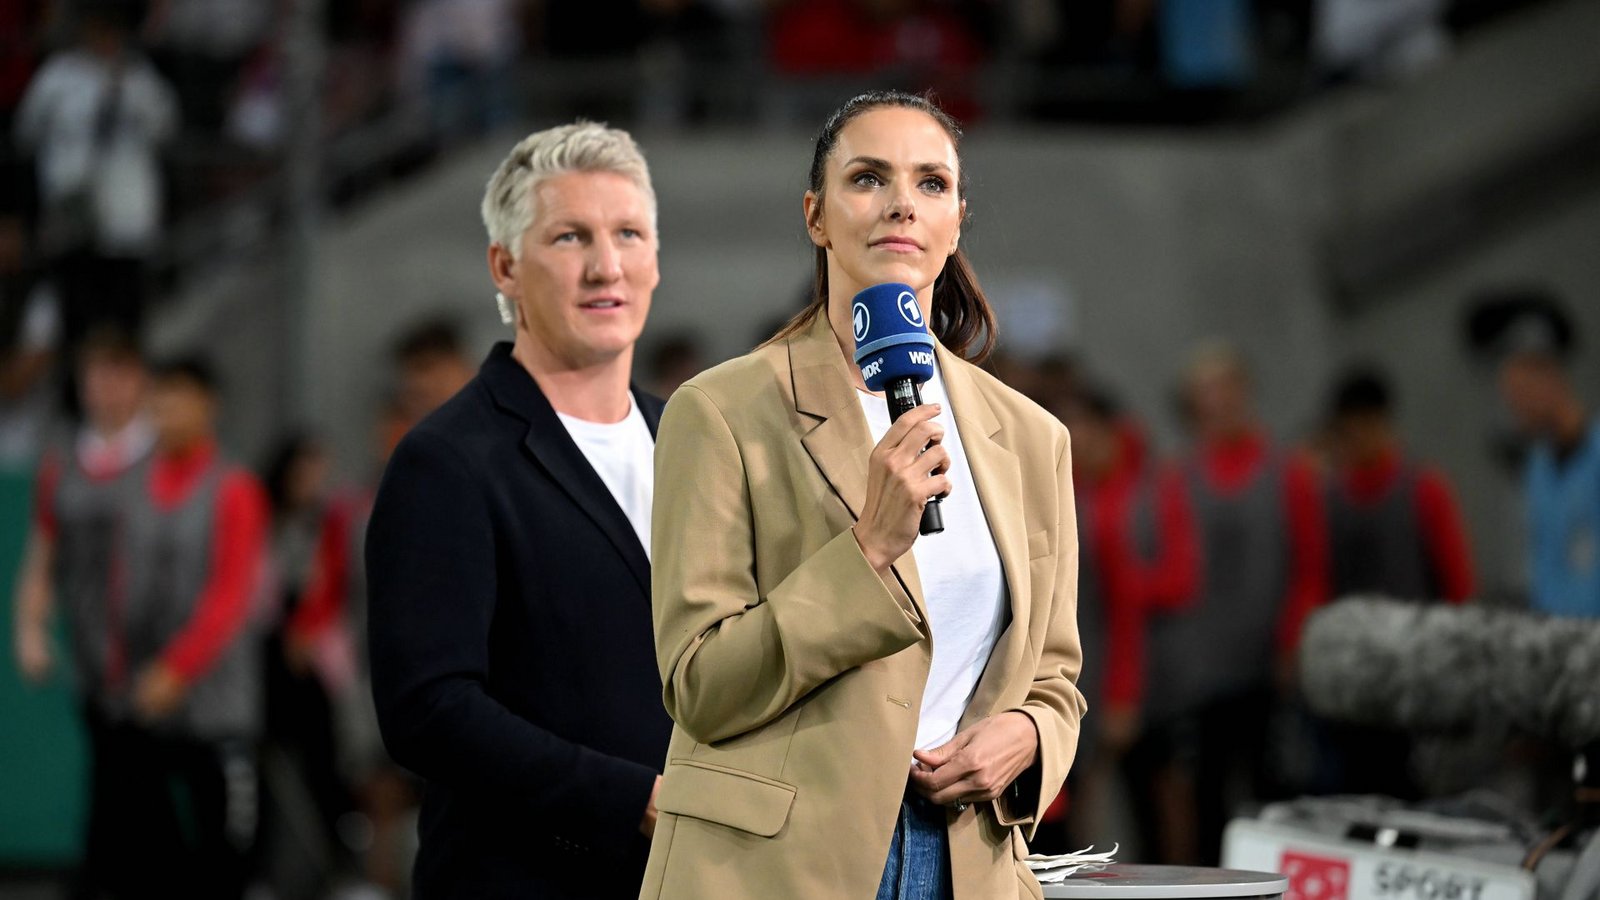 Esther Sedlaczek (re.) und Bastian Schweinsteiger melden sich für die ARD abends live aus Katar zum Spiel des Tages.Foto: imago/Ulrich Hufnagel